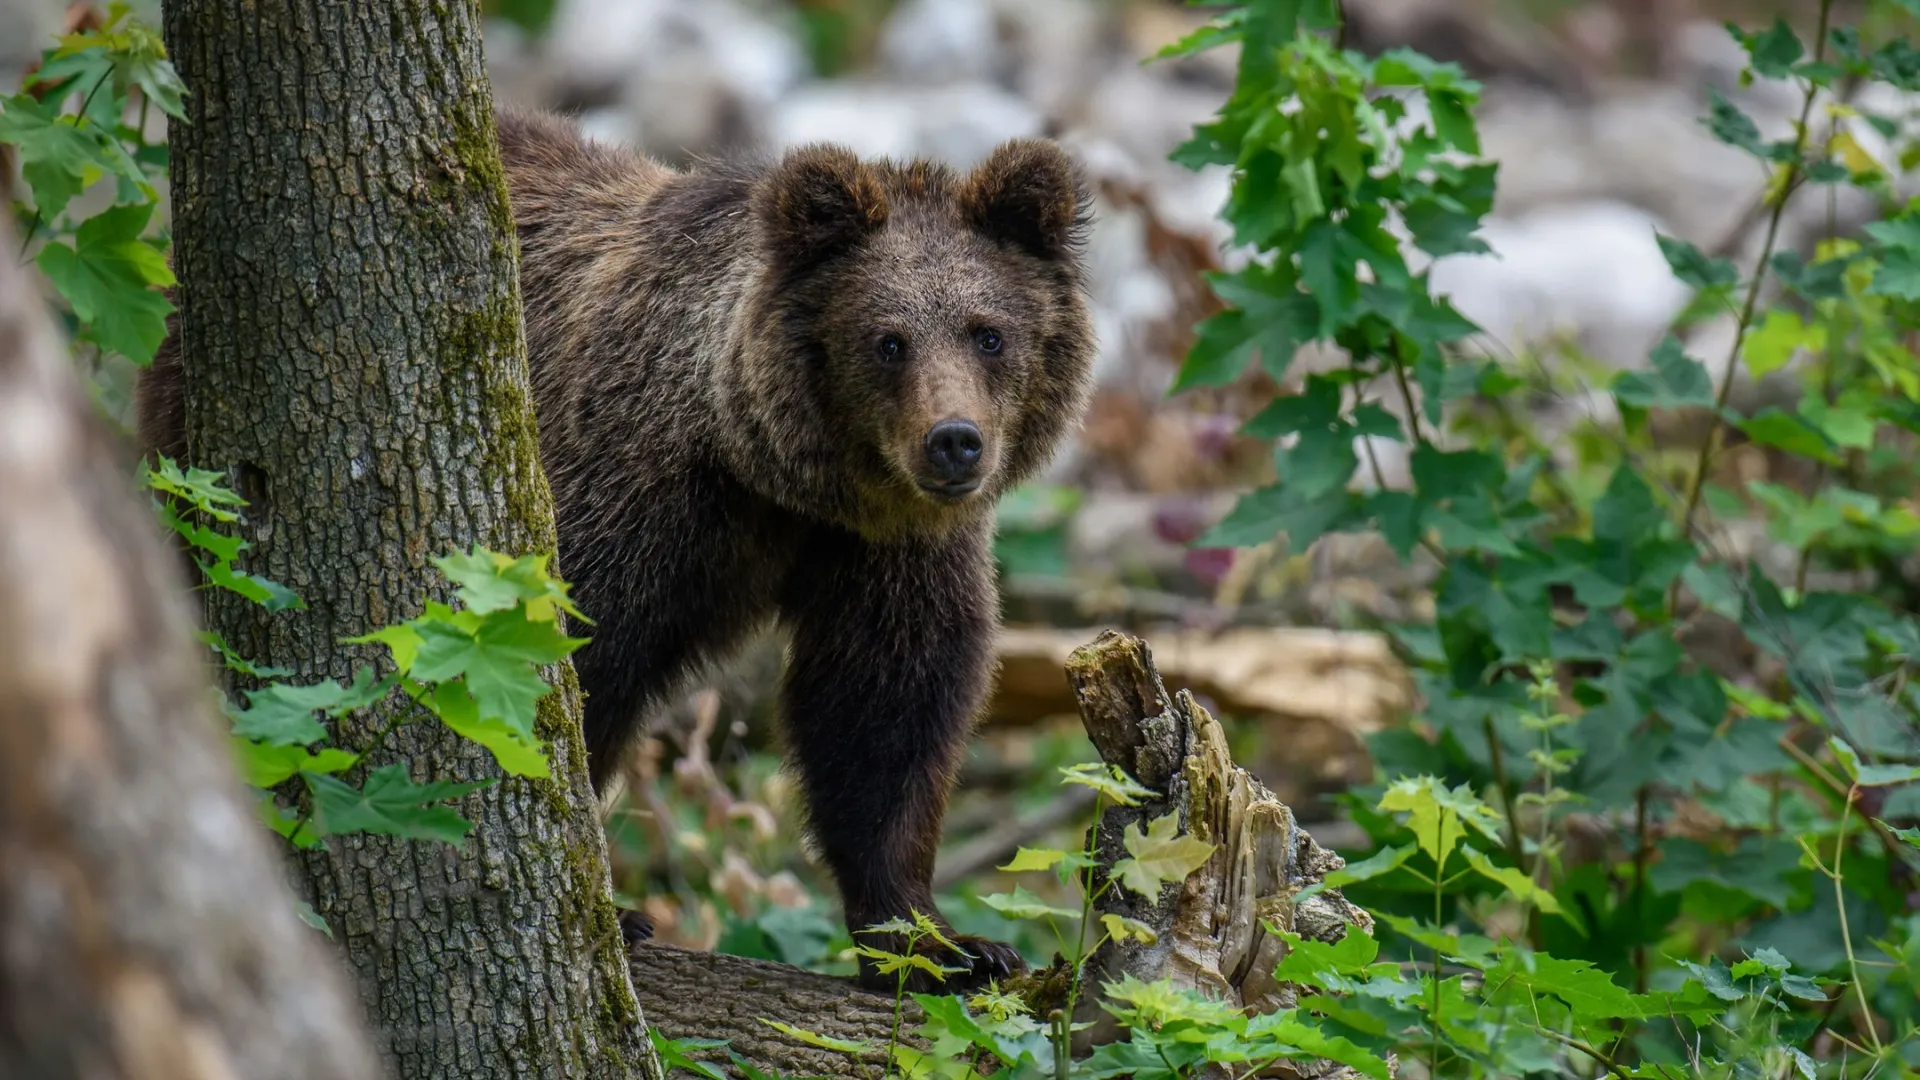 Бурый медведь показал свое видение в съемках дикой природы. Фото: Volodymyr Burdiak / Shutterstock / Fotodom